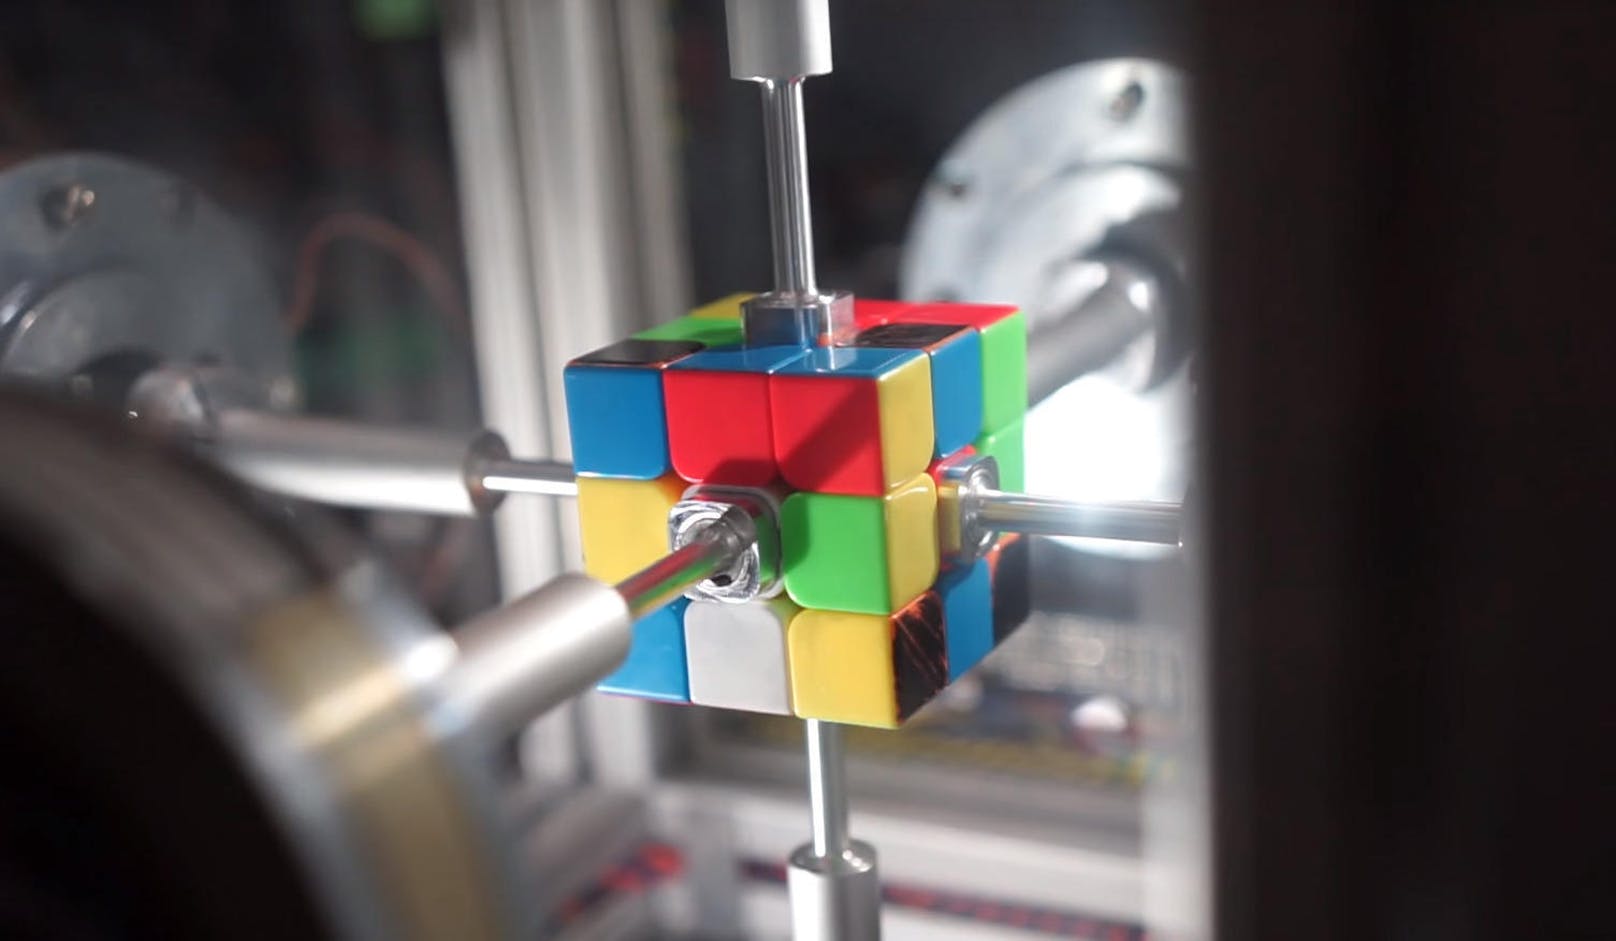 <b>12. März 2018:</b> Zwei Bastler haben eine Maschine gebaut, die den Rubik's Cube in Rekordzeit in die richtige Position dreht. Aber nicht blinzeln: Der Apparat schafft es in nur 0,38 Sekunden. Zum Vergleich: Ein Mensch braucht mindestens fünf Sekunden und der bisherige Rekord einer Maschine liegt bei 0,637 Sekunden. Für den Aufbau nutzten die Tüftler sechs Motoren und zwei Kameras, die der Software die Daten für die Bilderkennung liefern. <a href="https://www.youtube.com/watch?v=nt00QzKuNVY" target="_blank">Hier geht es zum Video.</a>